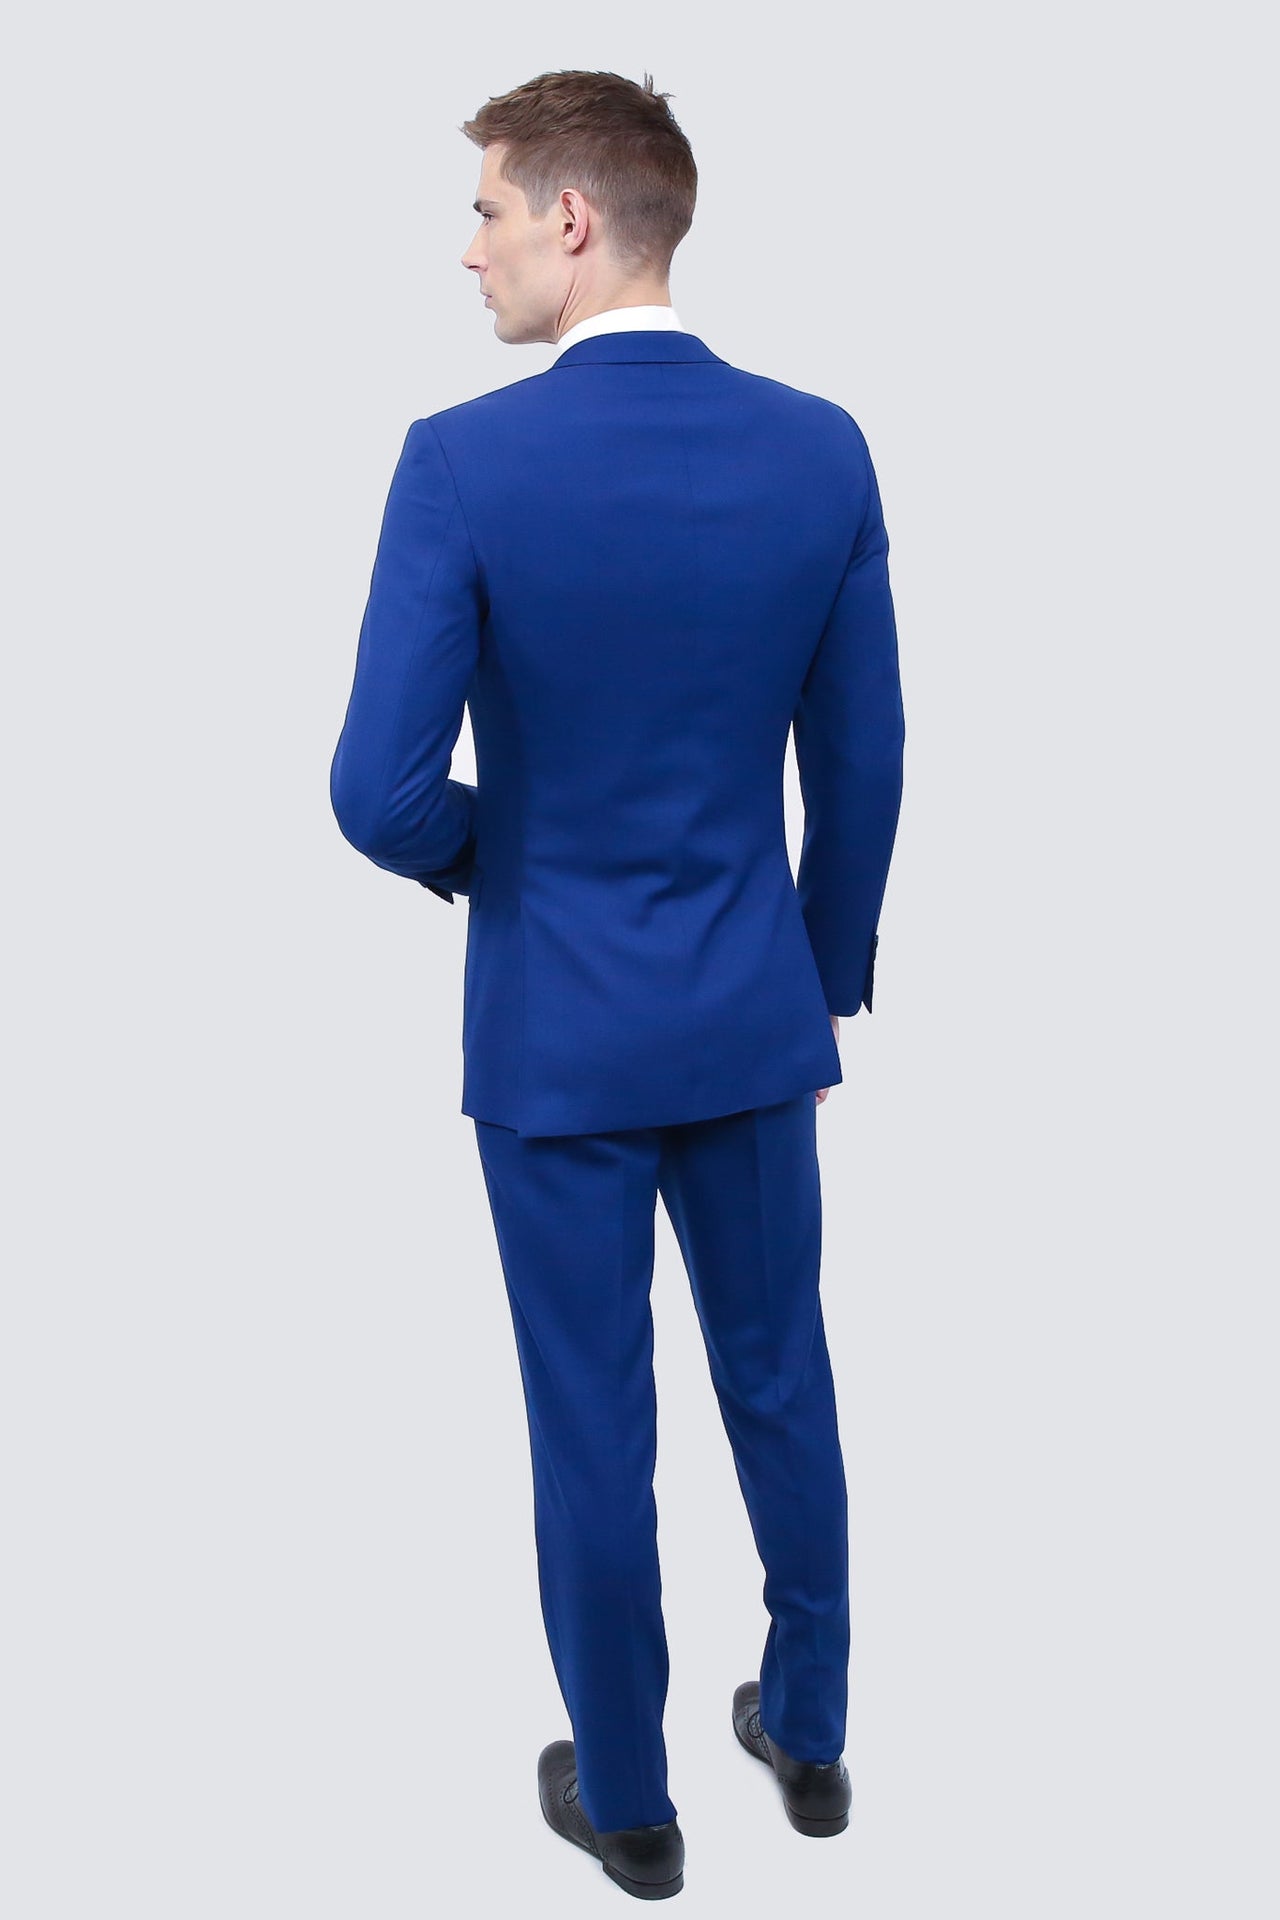 Shop Blue Suits Online